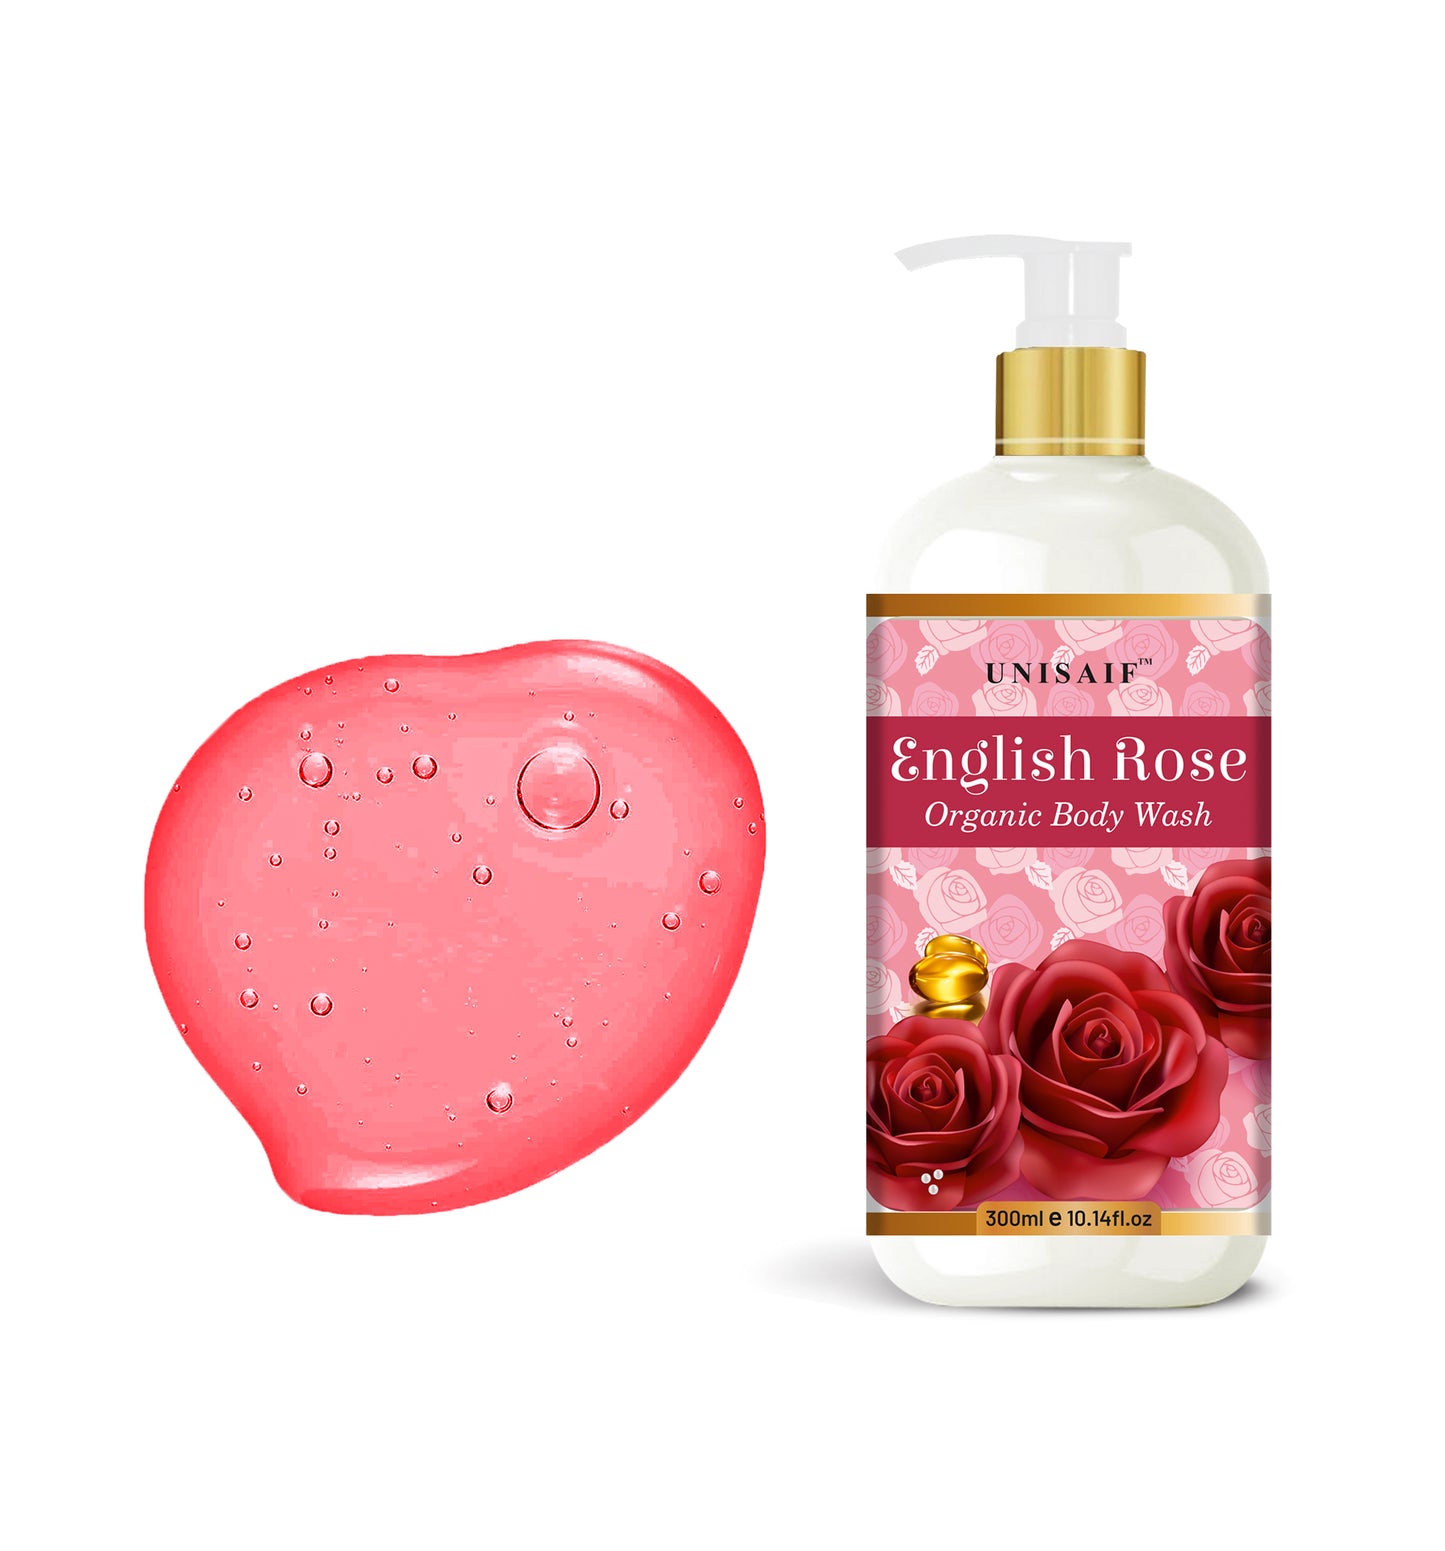 English Rose Organic Body Wash (300 ml) | Sulphate & Paraben Free| Skin Friendly|Nourishing